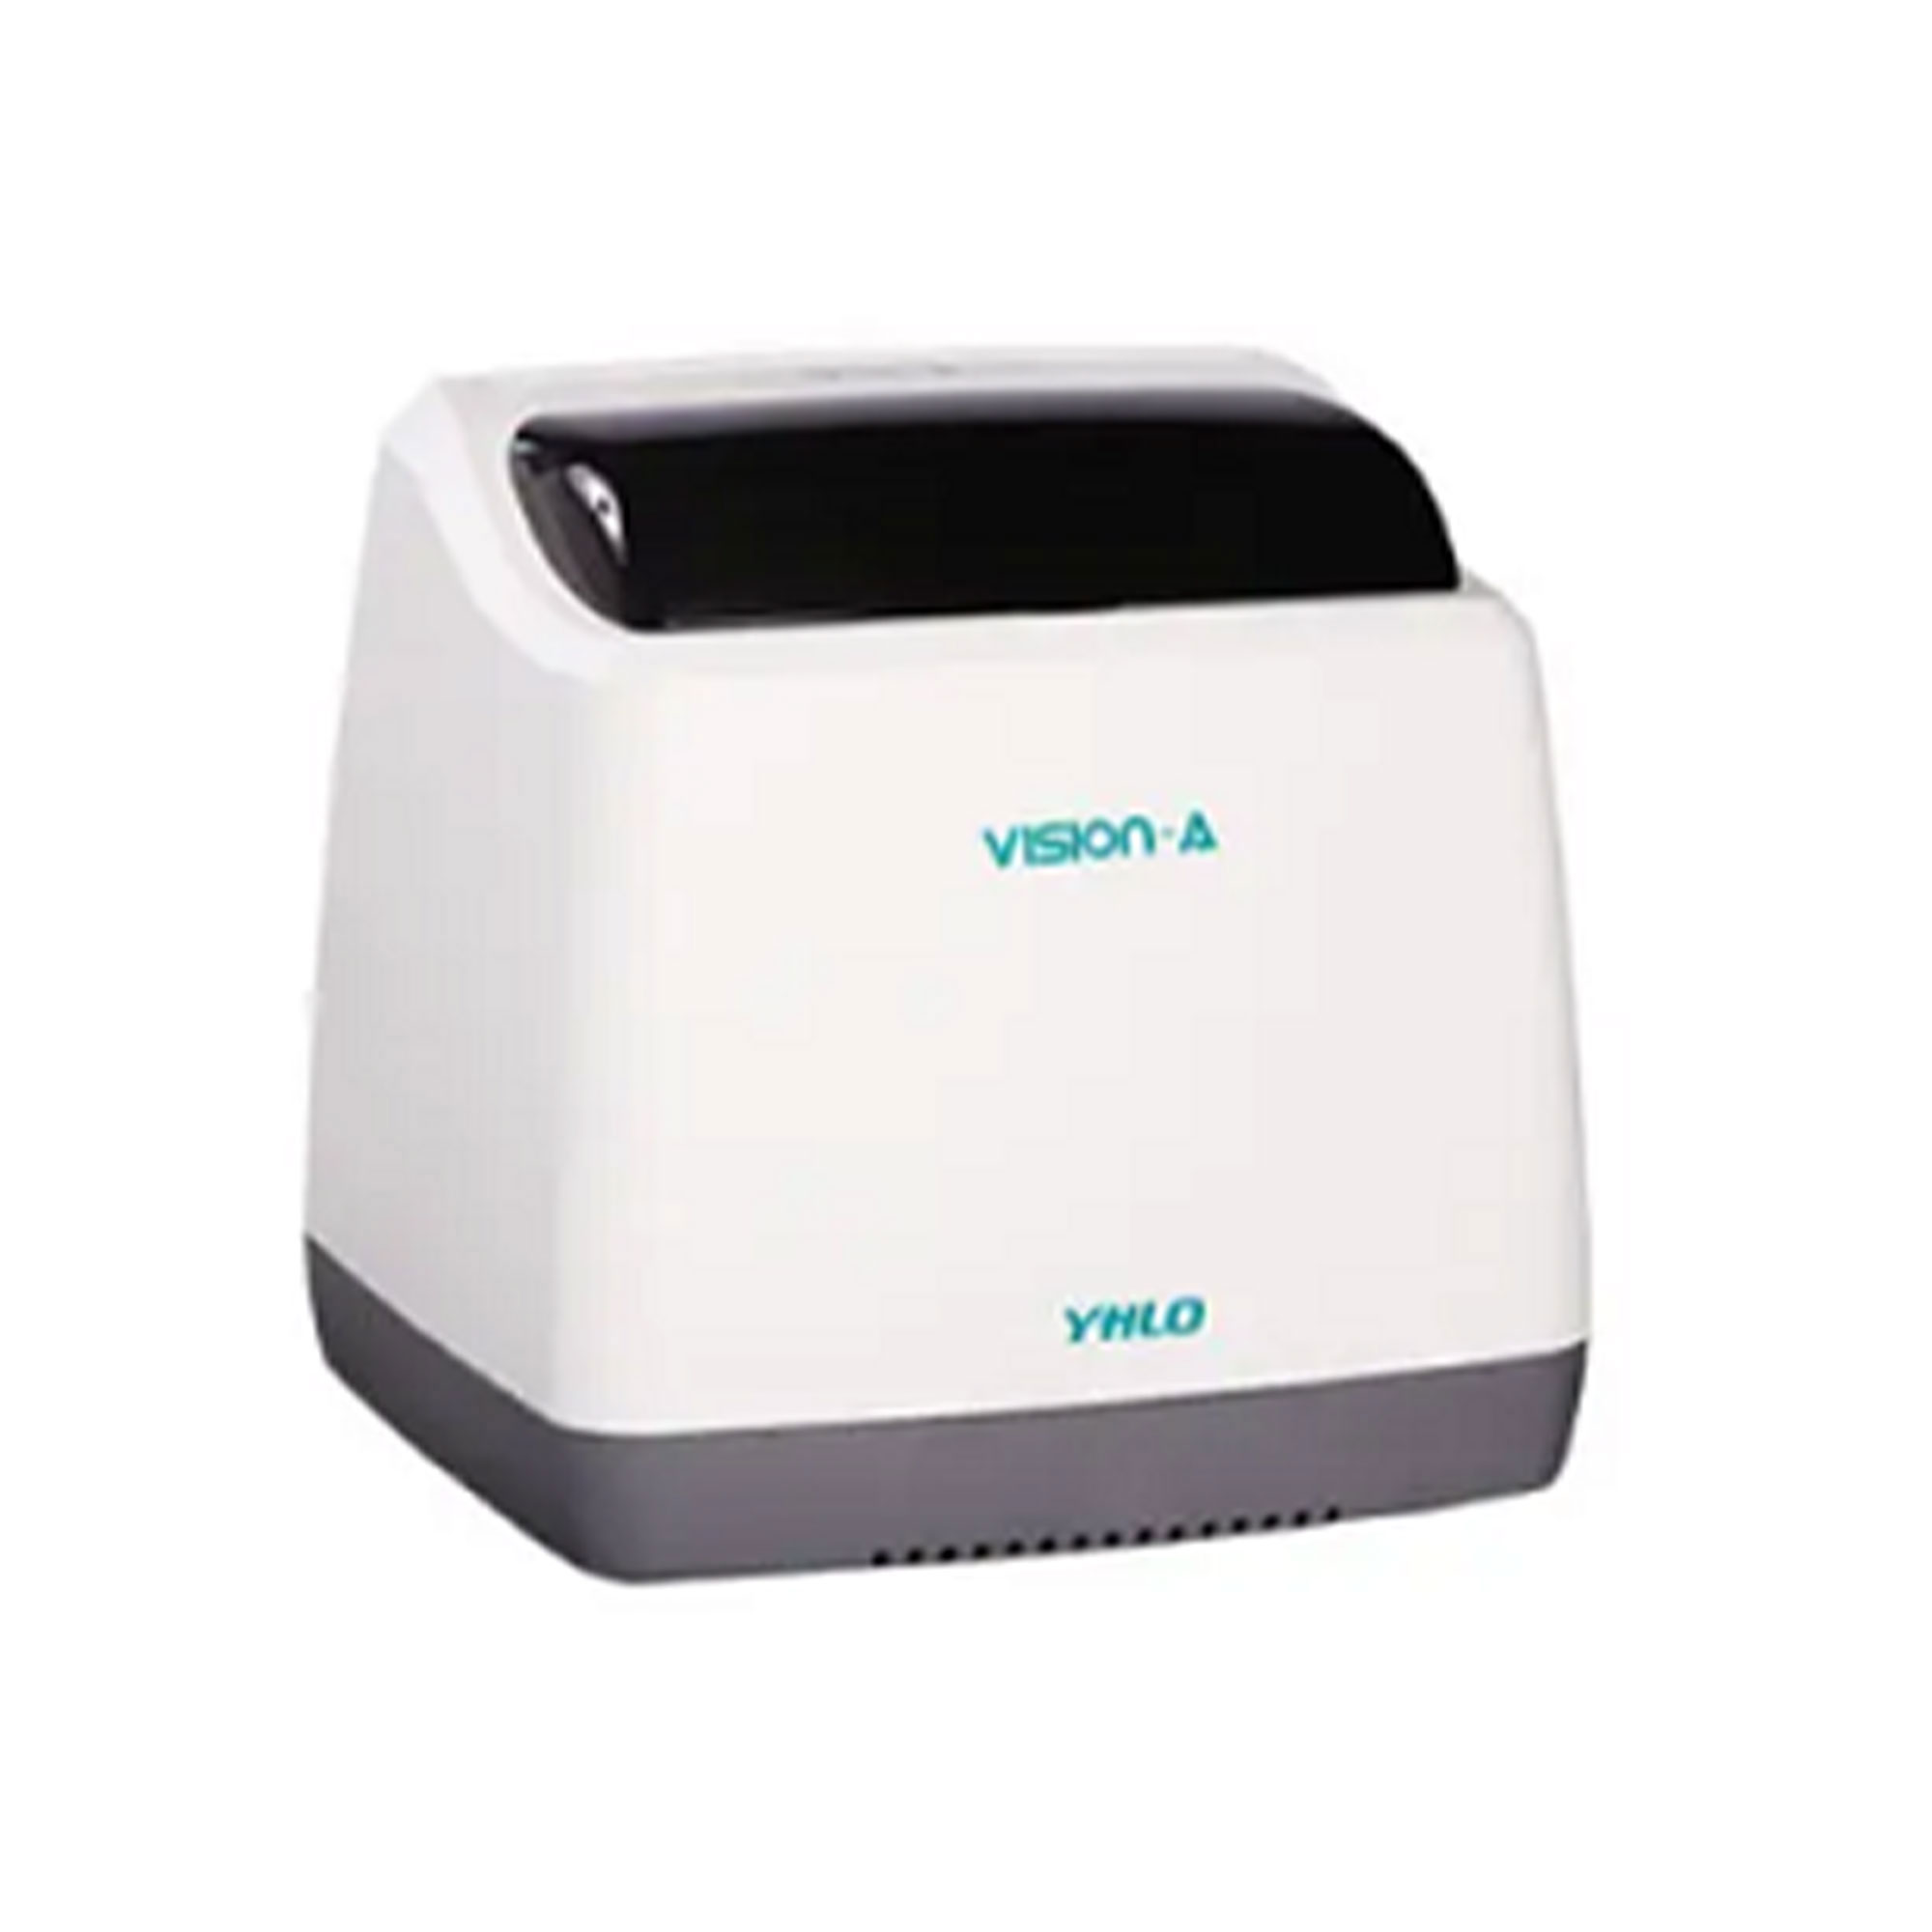 دستگاه سدیمان  آنالایزر - Vision ESR Analyzer32 - VHLO - دستگاه - هماتولوژی و بانک خون - آریا تشخیص پارس